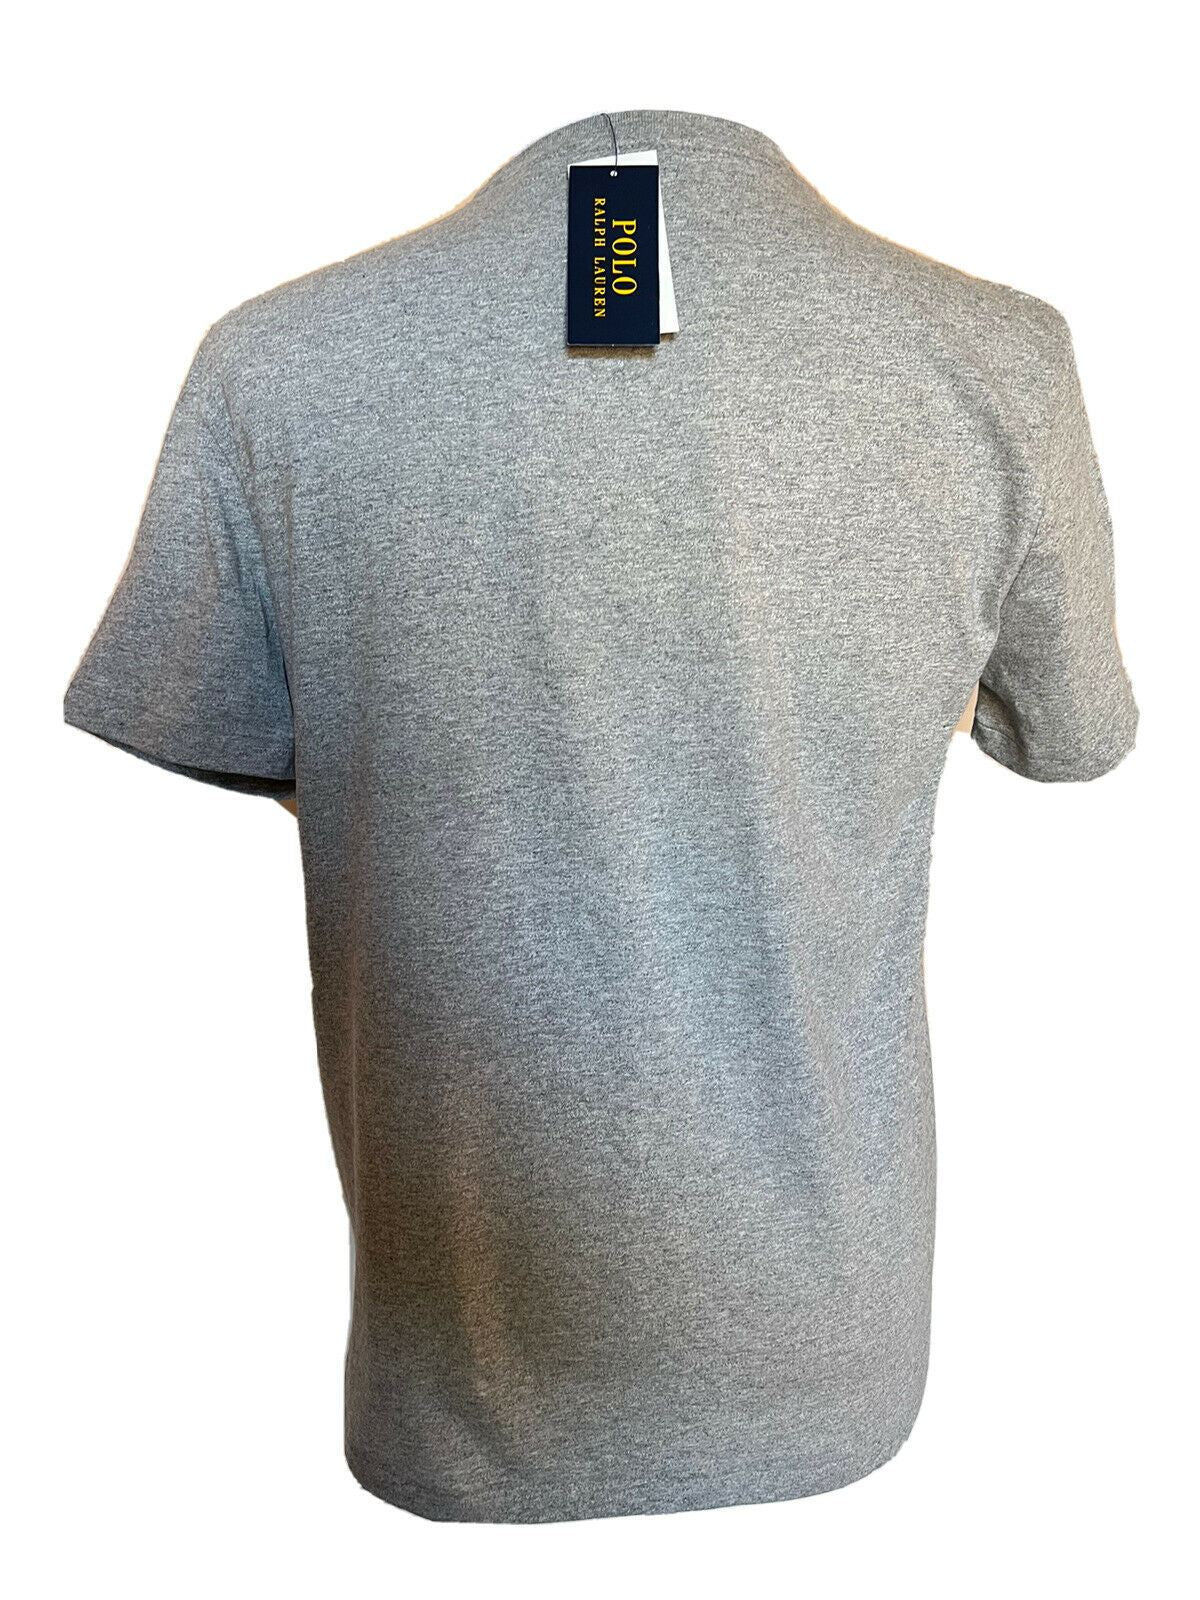 NWT 59.50 Polo Ralph Lauren Bear T-Shirt Gray XL